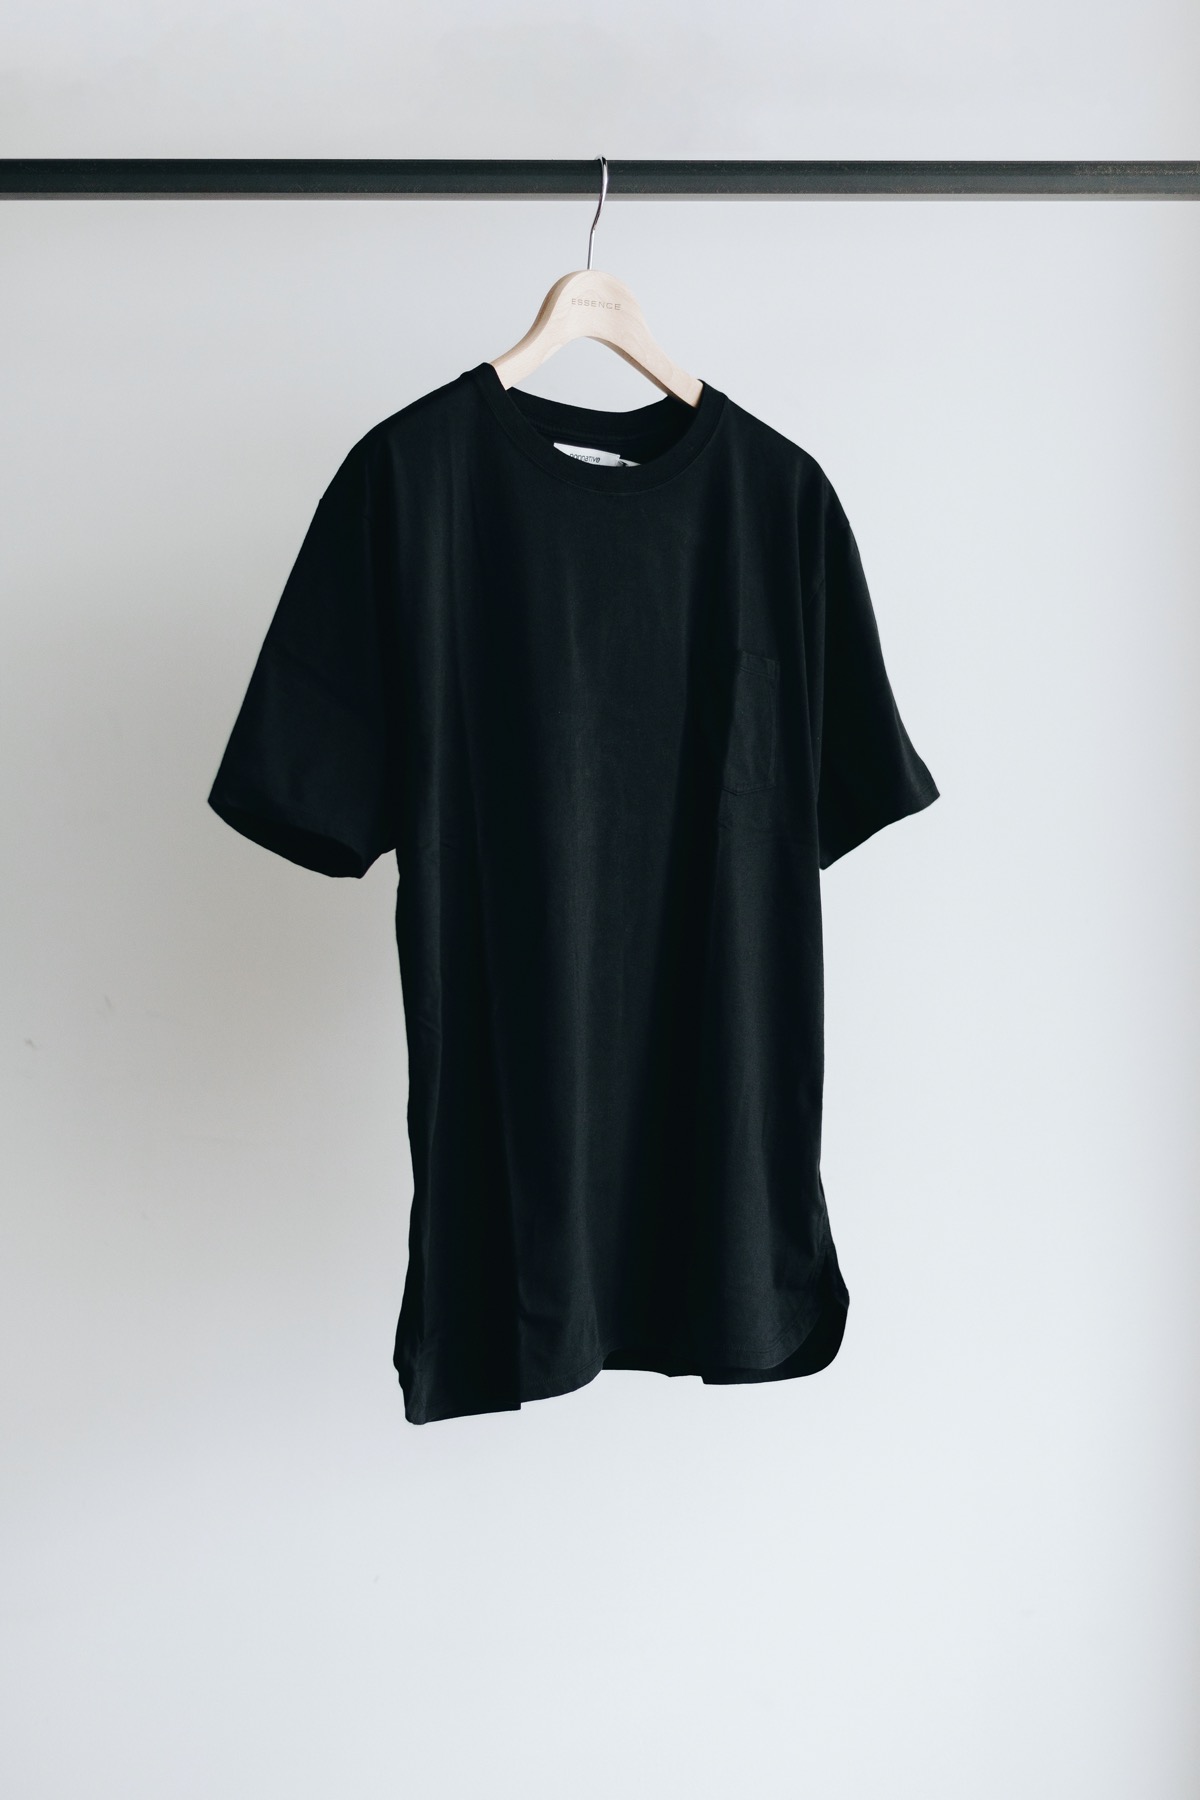 【新作】nonnativeノンネイティブTシャツ1ブラック